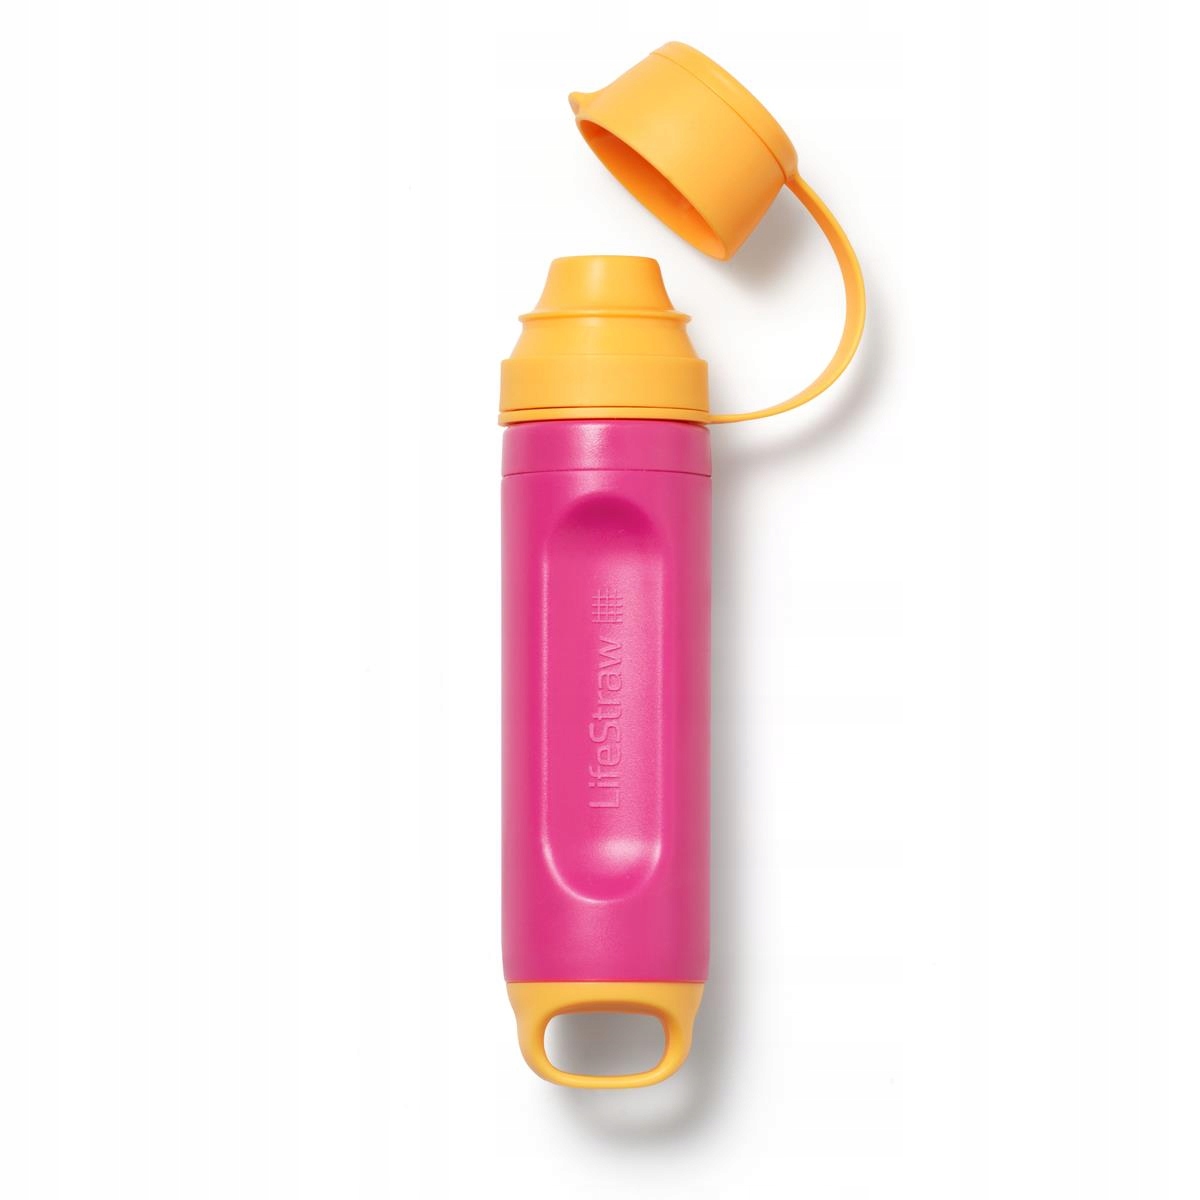 Vodní filtr LifeStraw Solo filtruje 99,99% osobní brčko na láhev